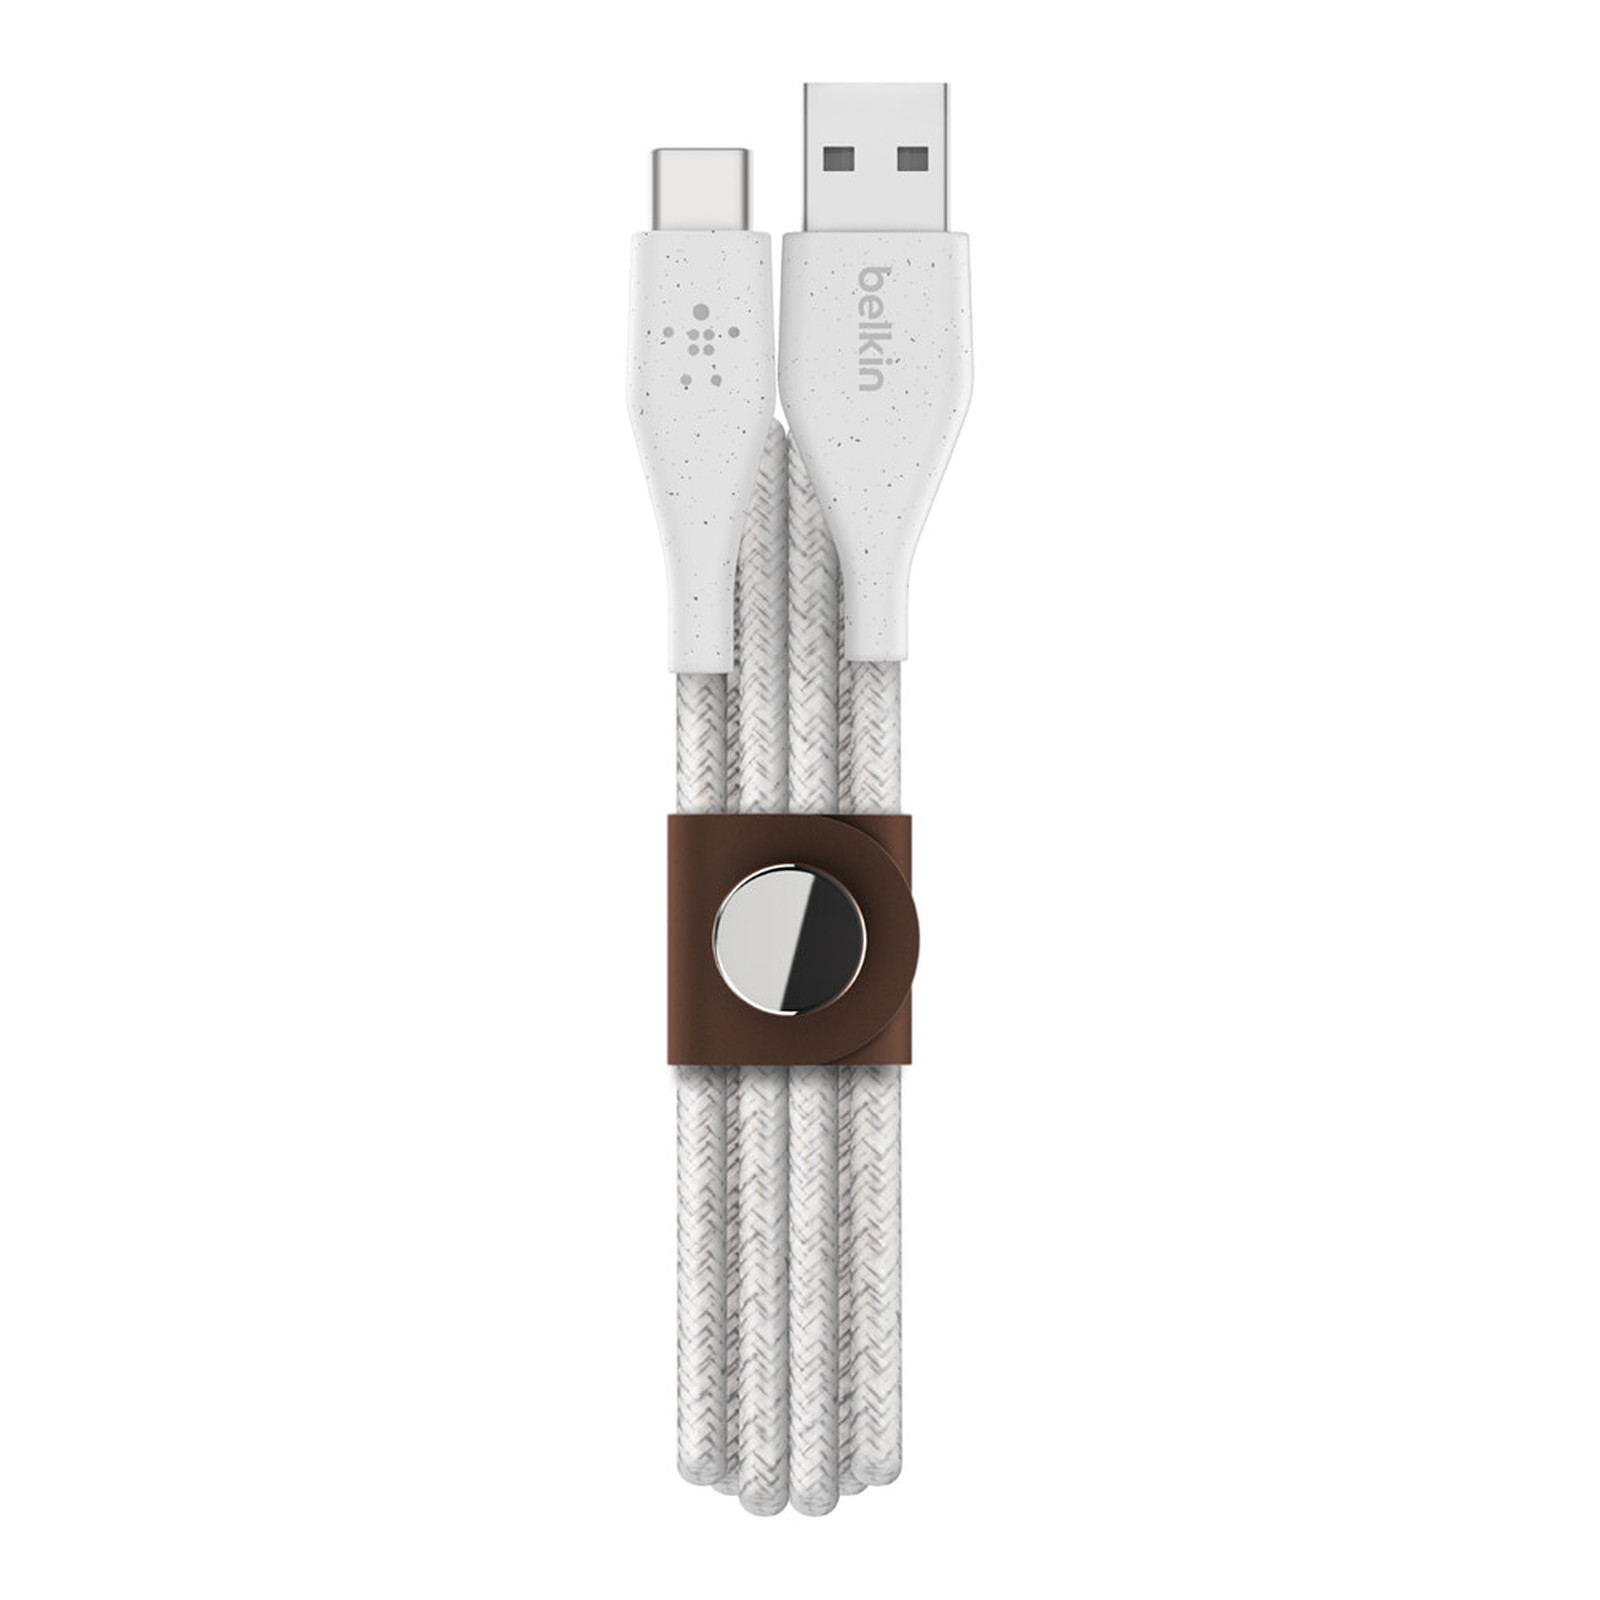 Belkin DuraTek Plus USB-C vers USB-A avec sangle de fermeture (Blanc) - 1.2 m - Cable & Adaptateur Belkin